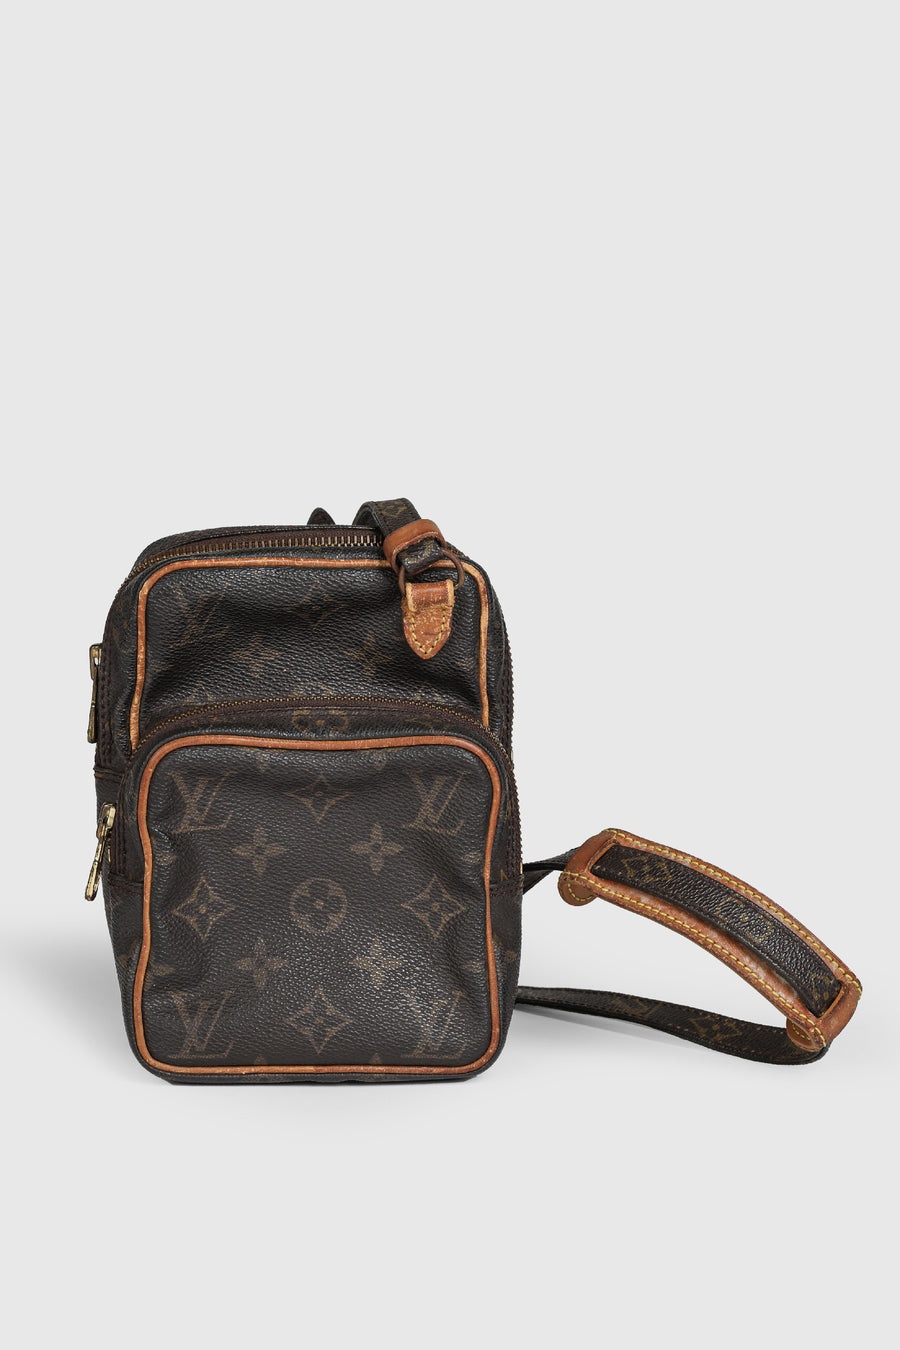 Vintage Louis Vuitton Mini Amazone Bag